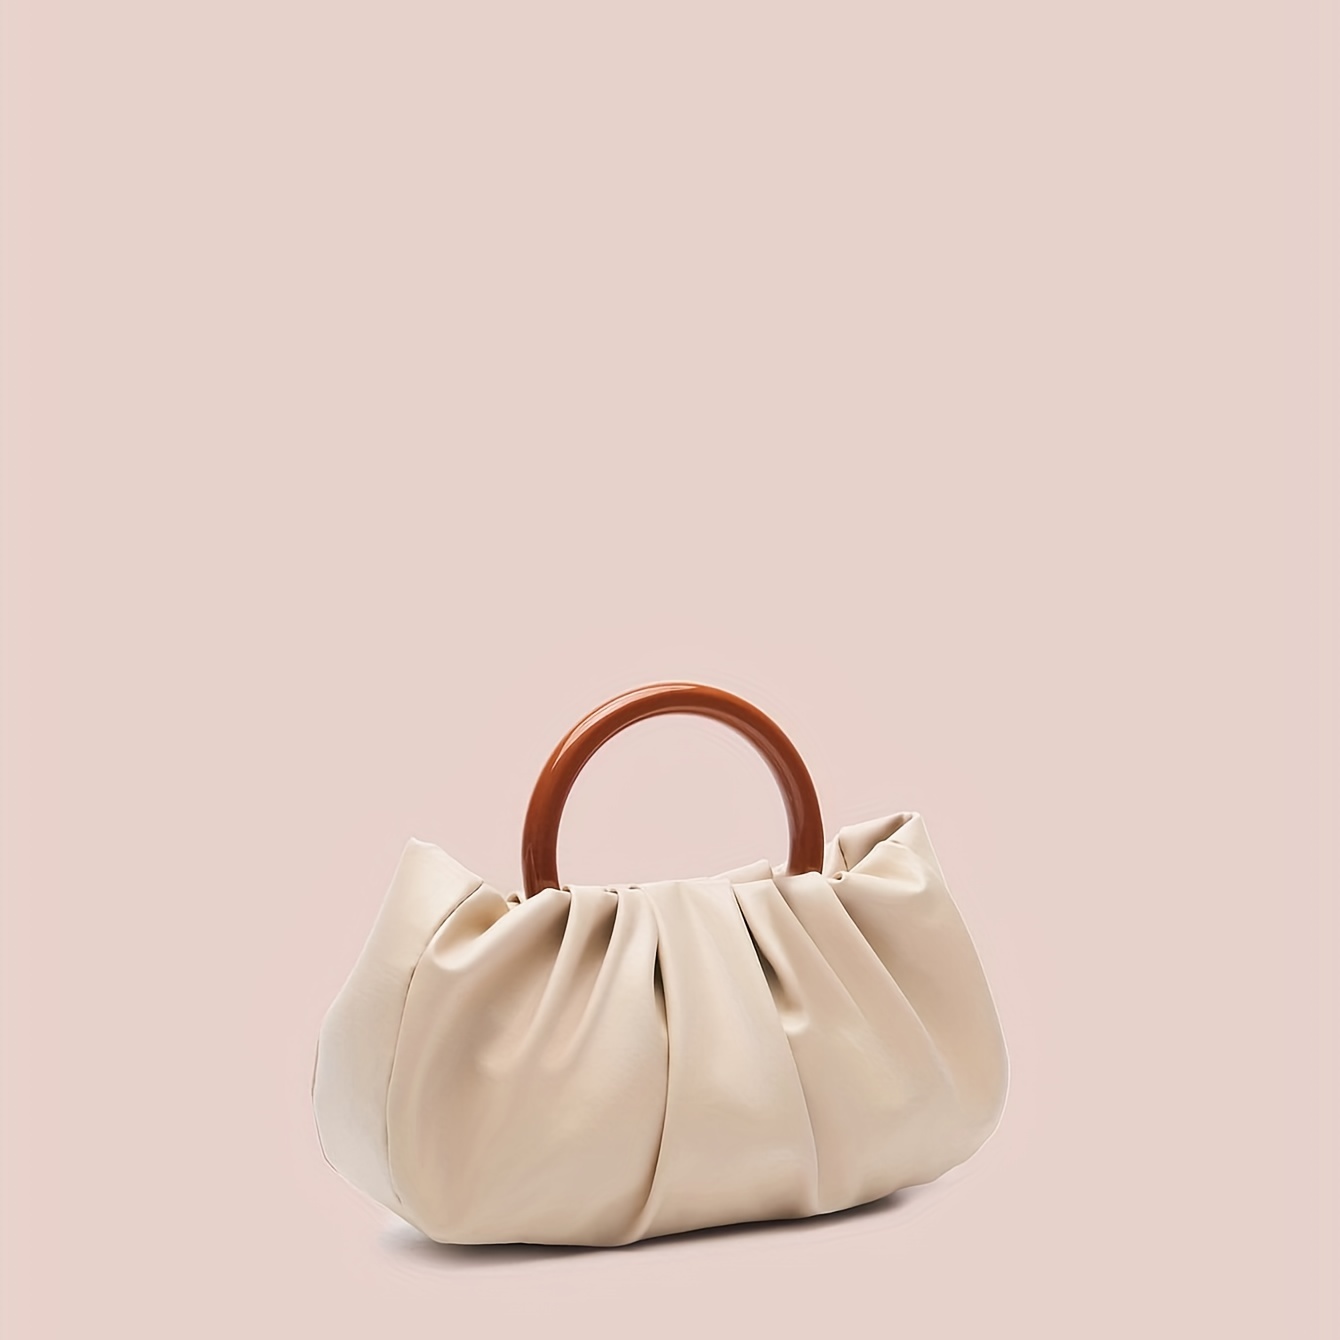 Thoughts on this yellow JW Pei bag? : r/handbags